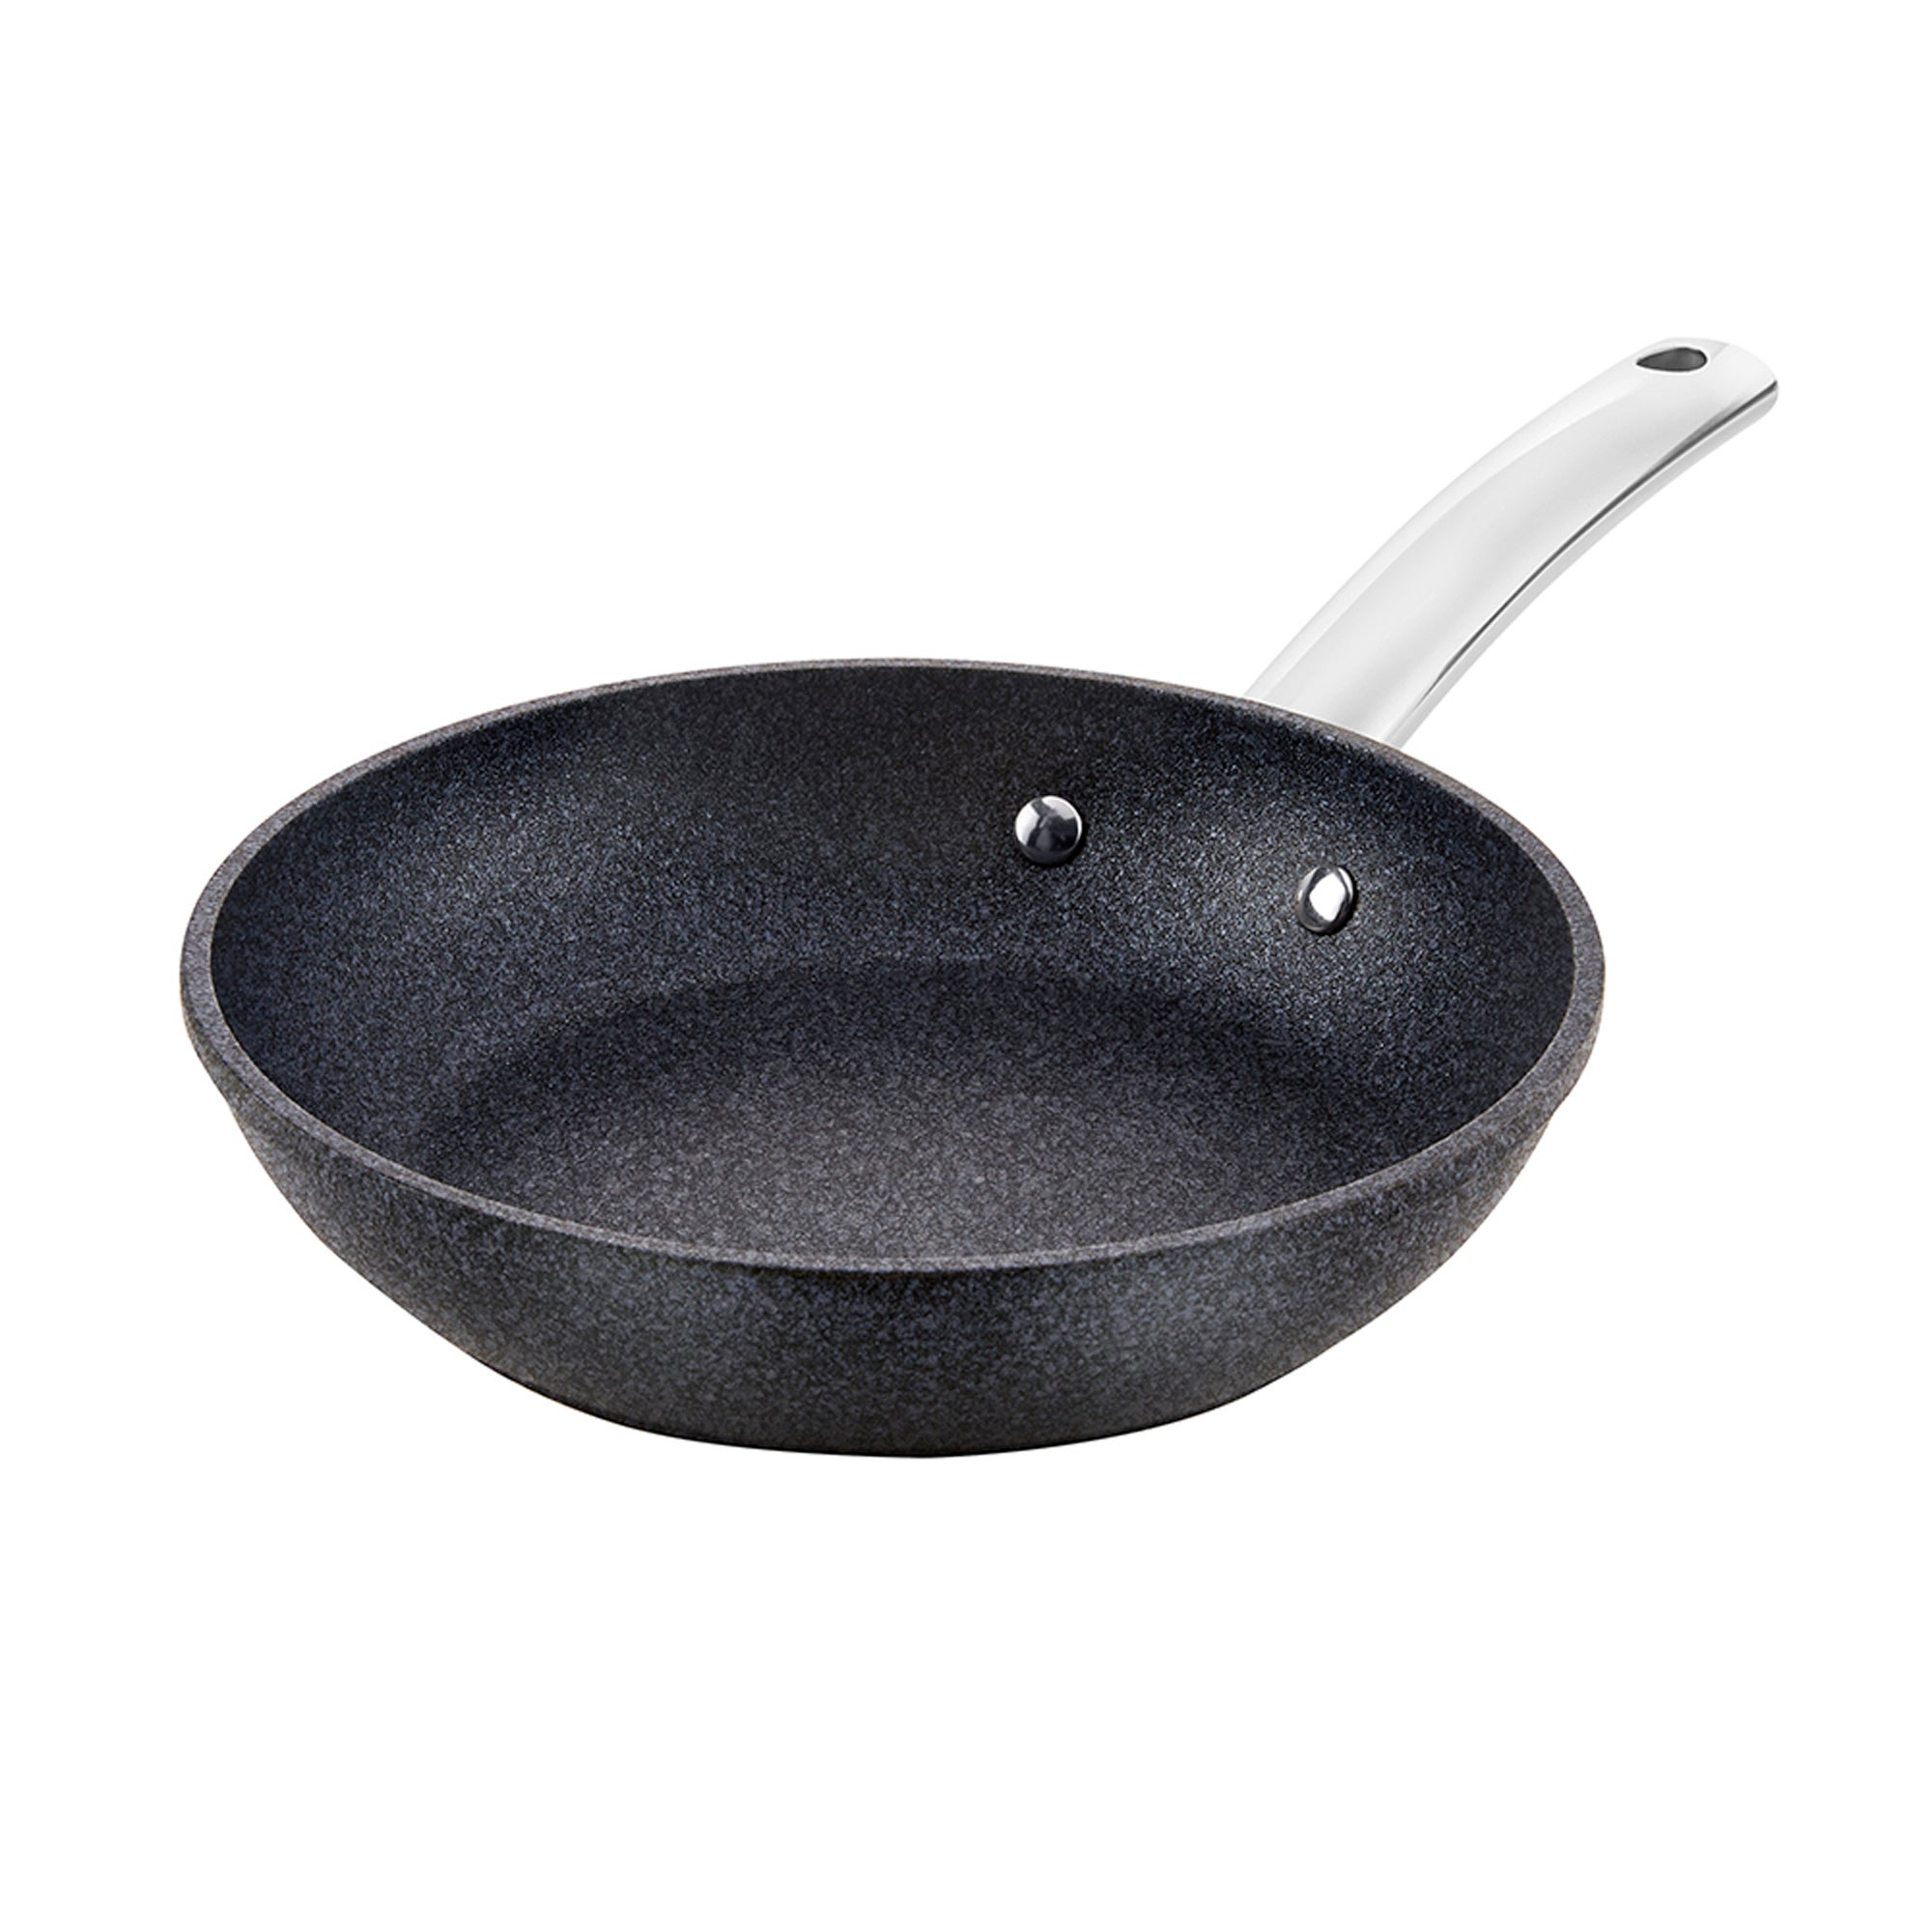 TruStone Non-Stick Aluminium Violet Black Frying Pan, 20cm